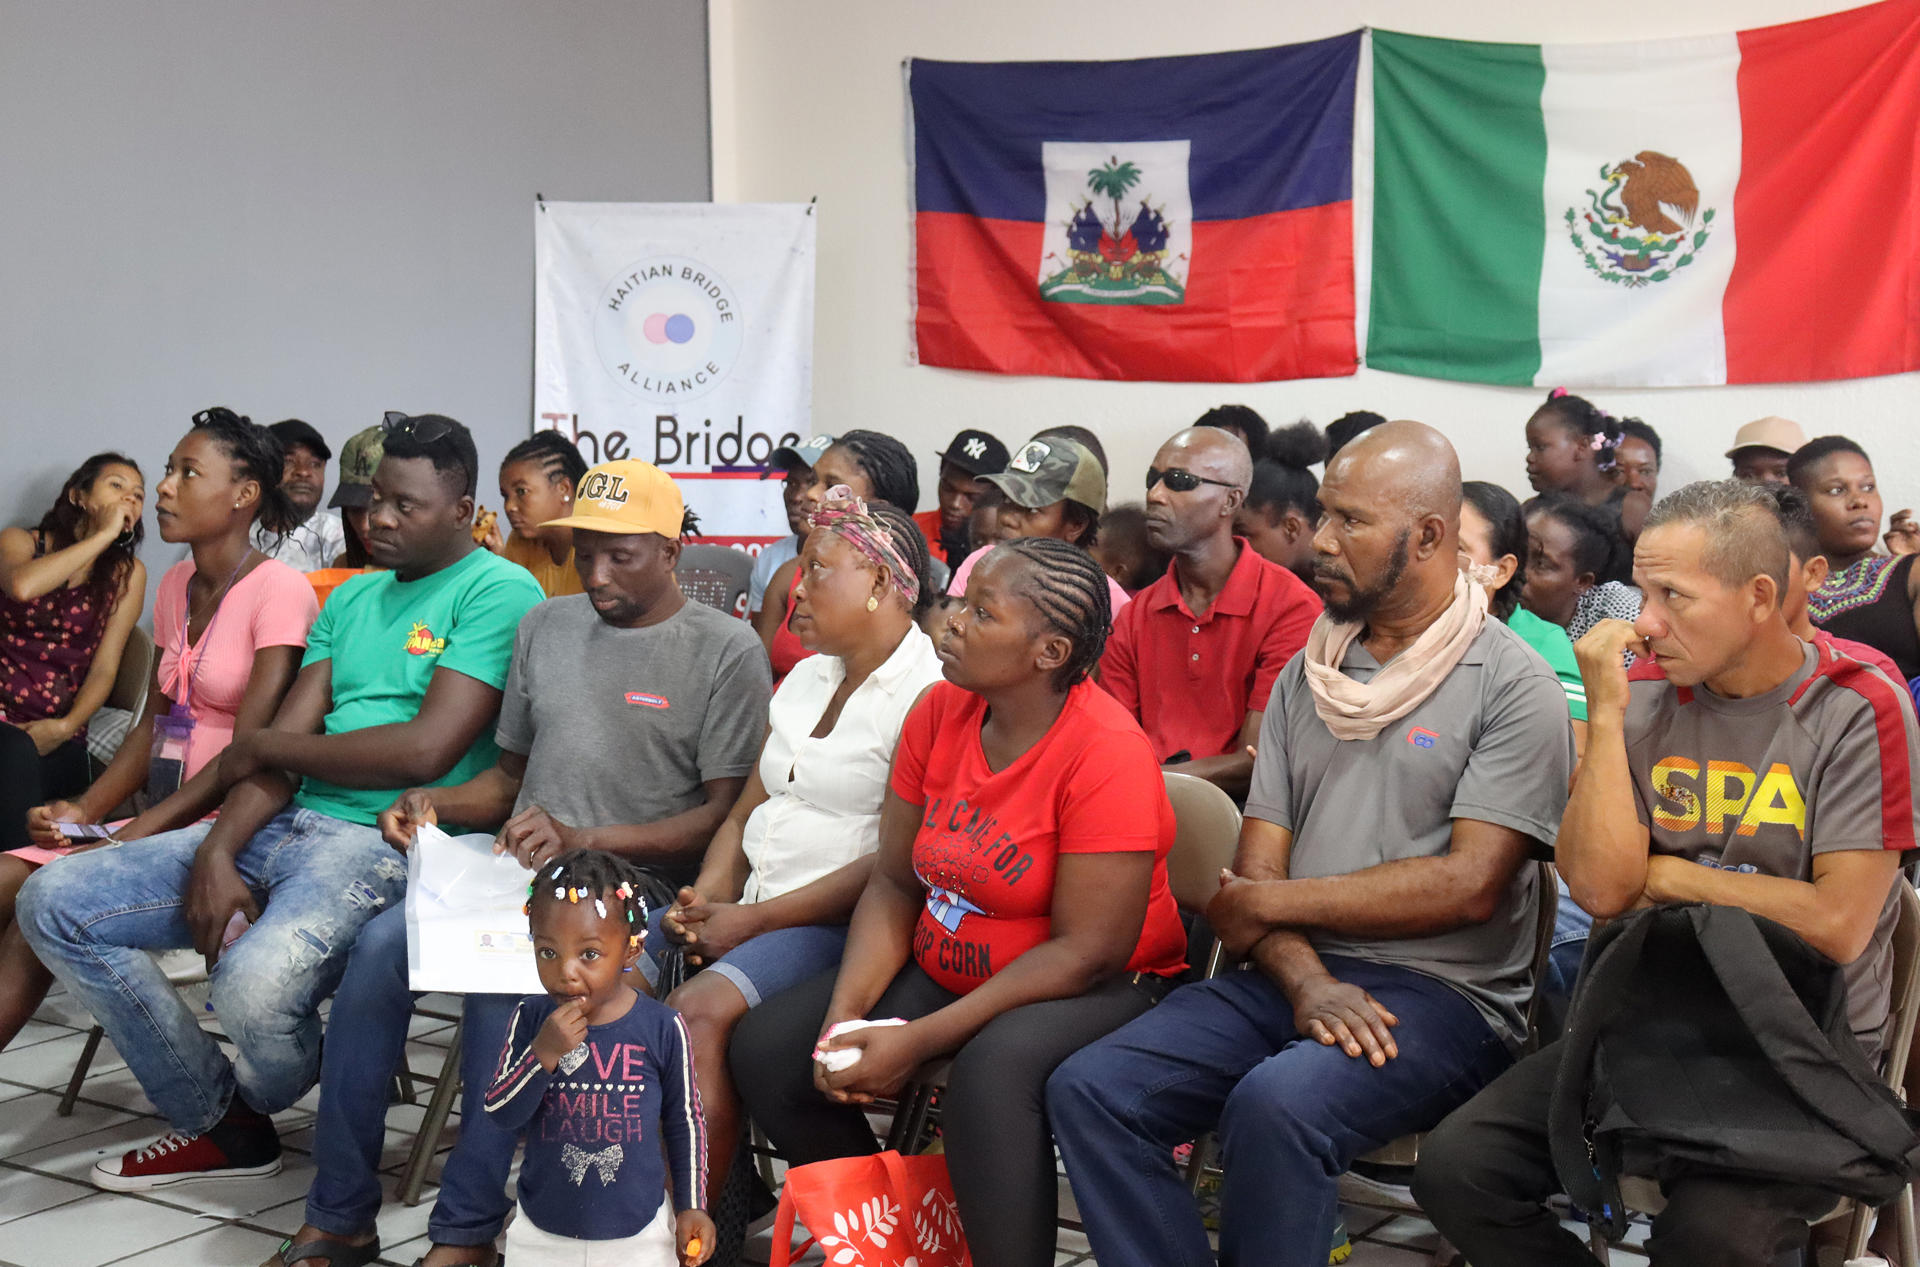 migrantes haitianos frontera sur mexico